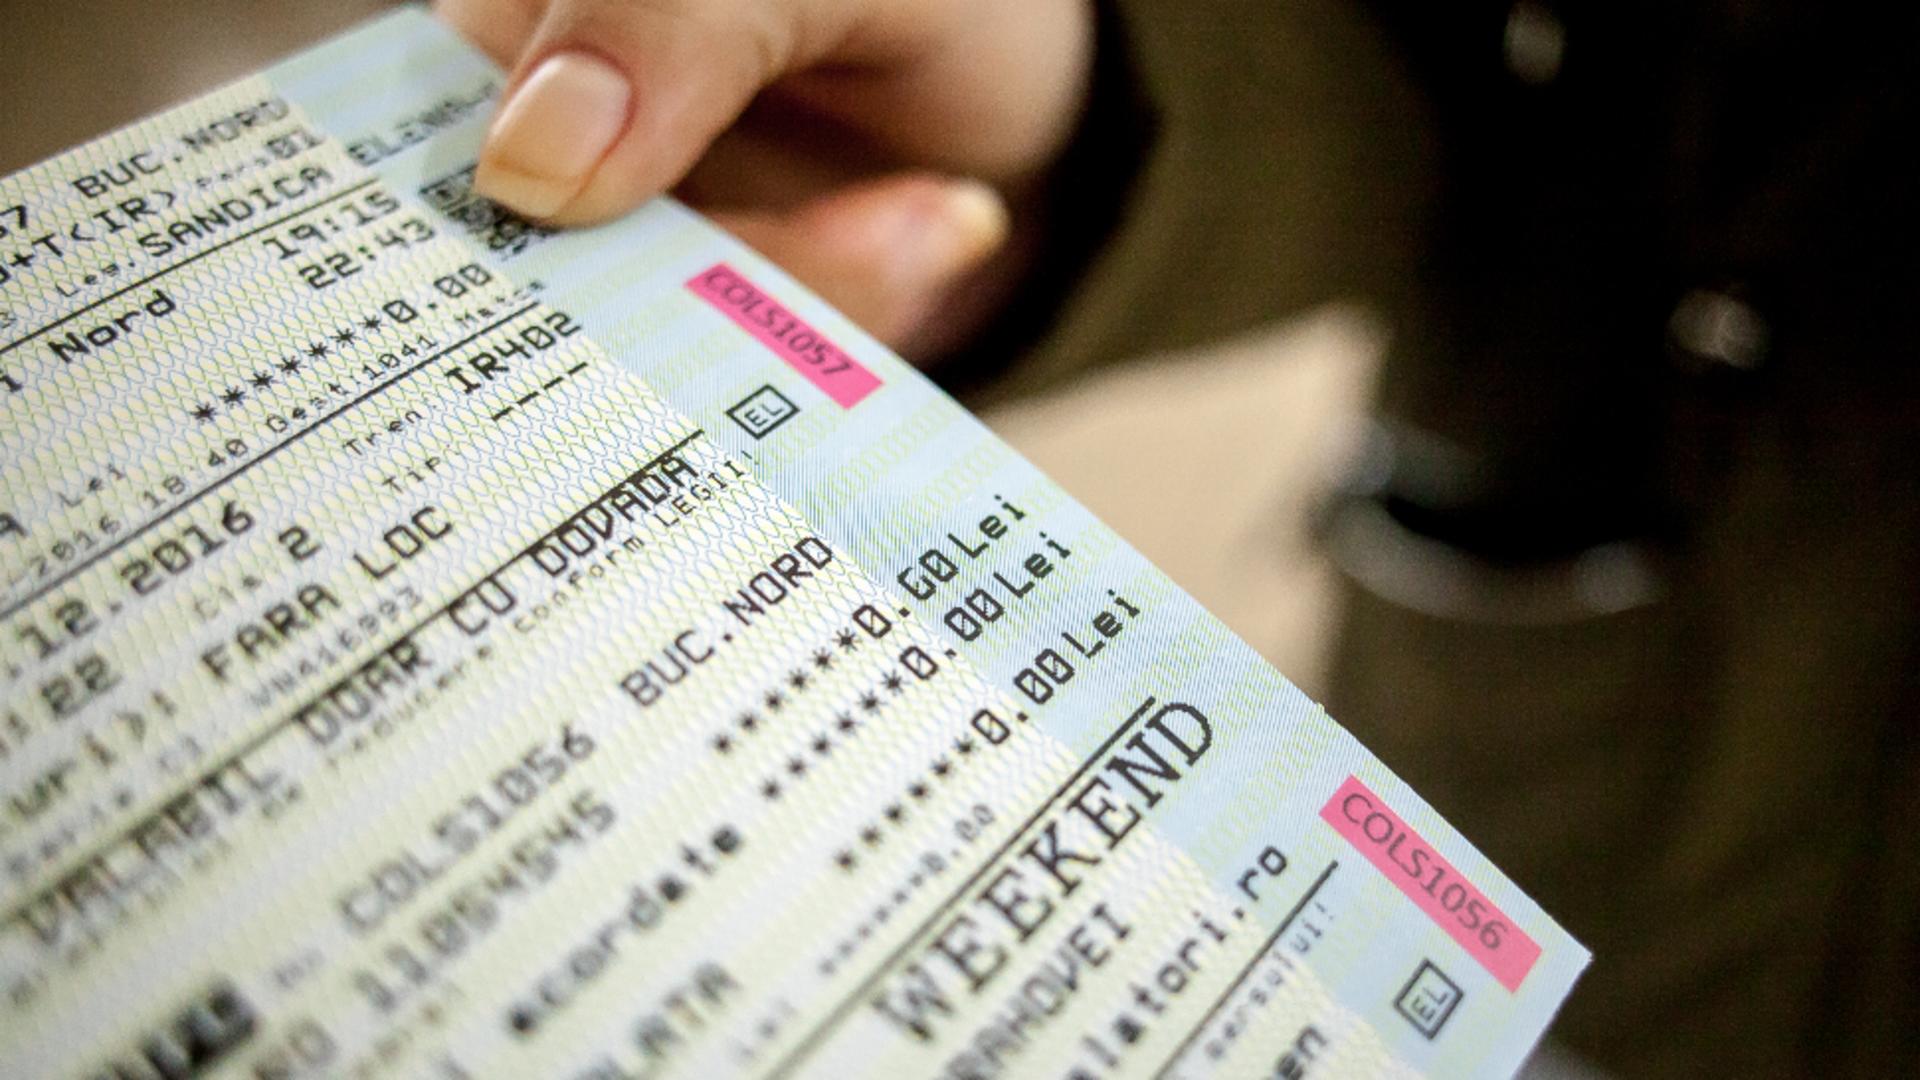 Pasagerii pot cumpăra biletele cu cardul direct din tren / Foto: Inquam Photos